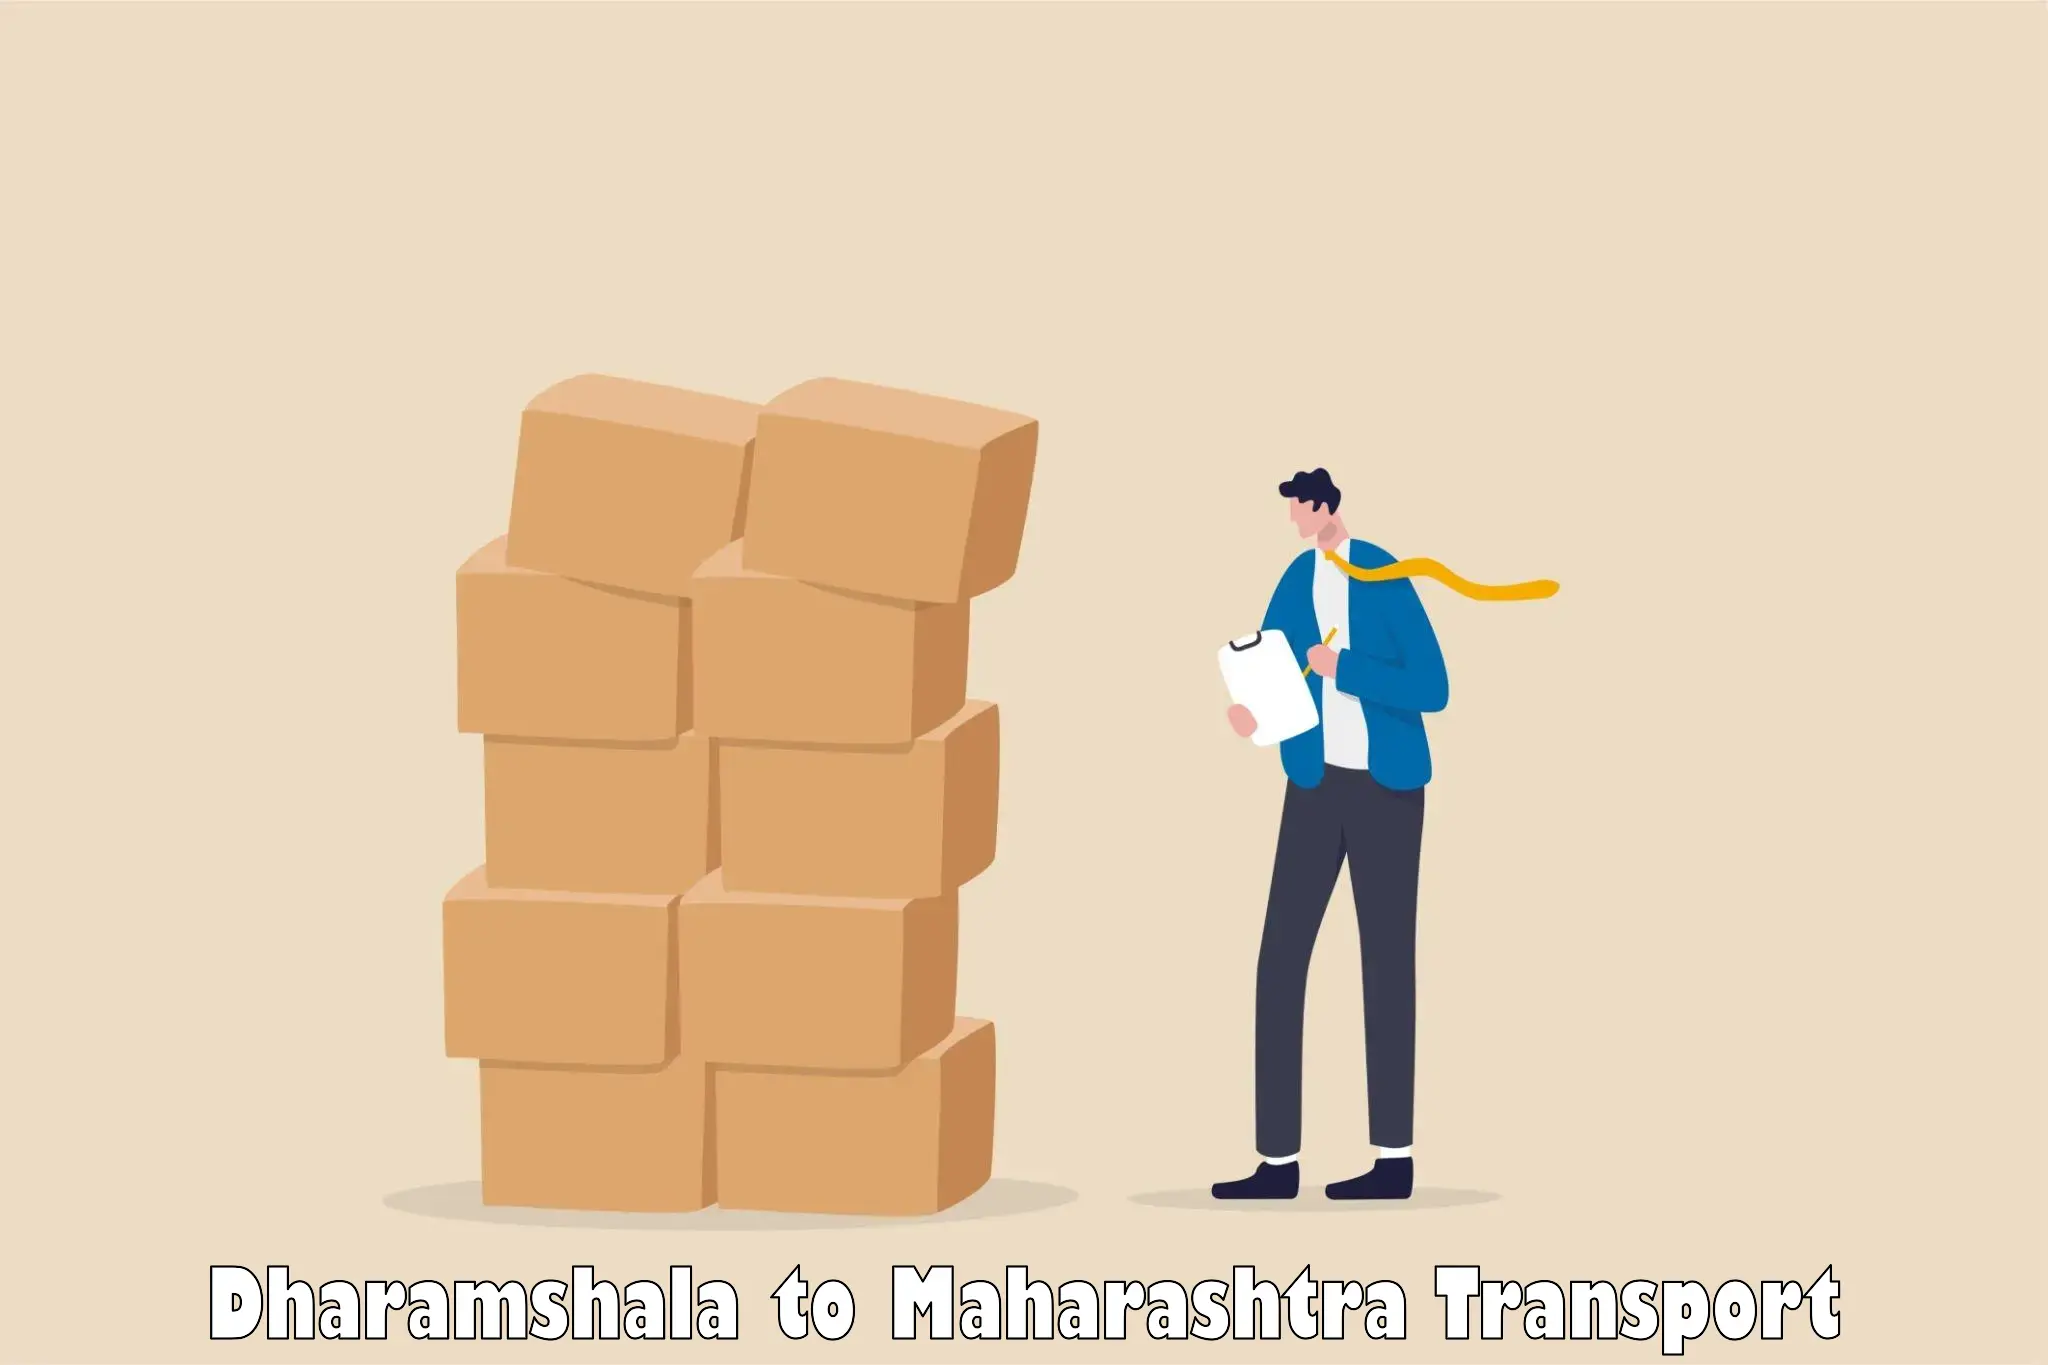 Furniture transport service Dharamshala to Patan Satara